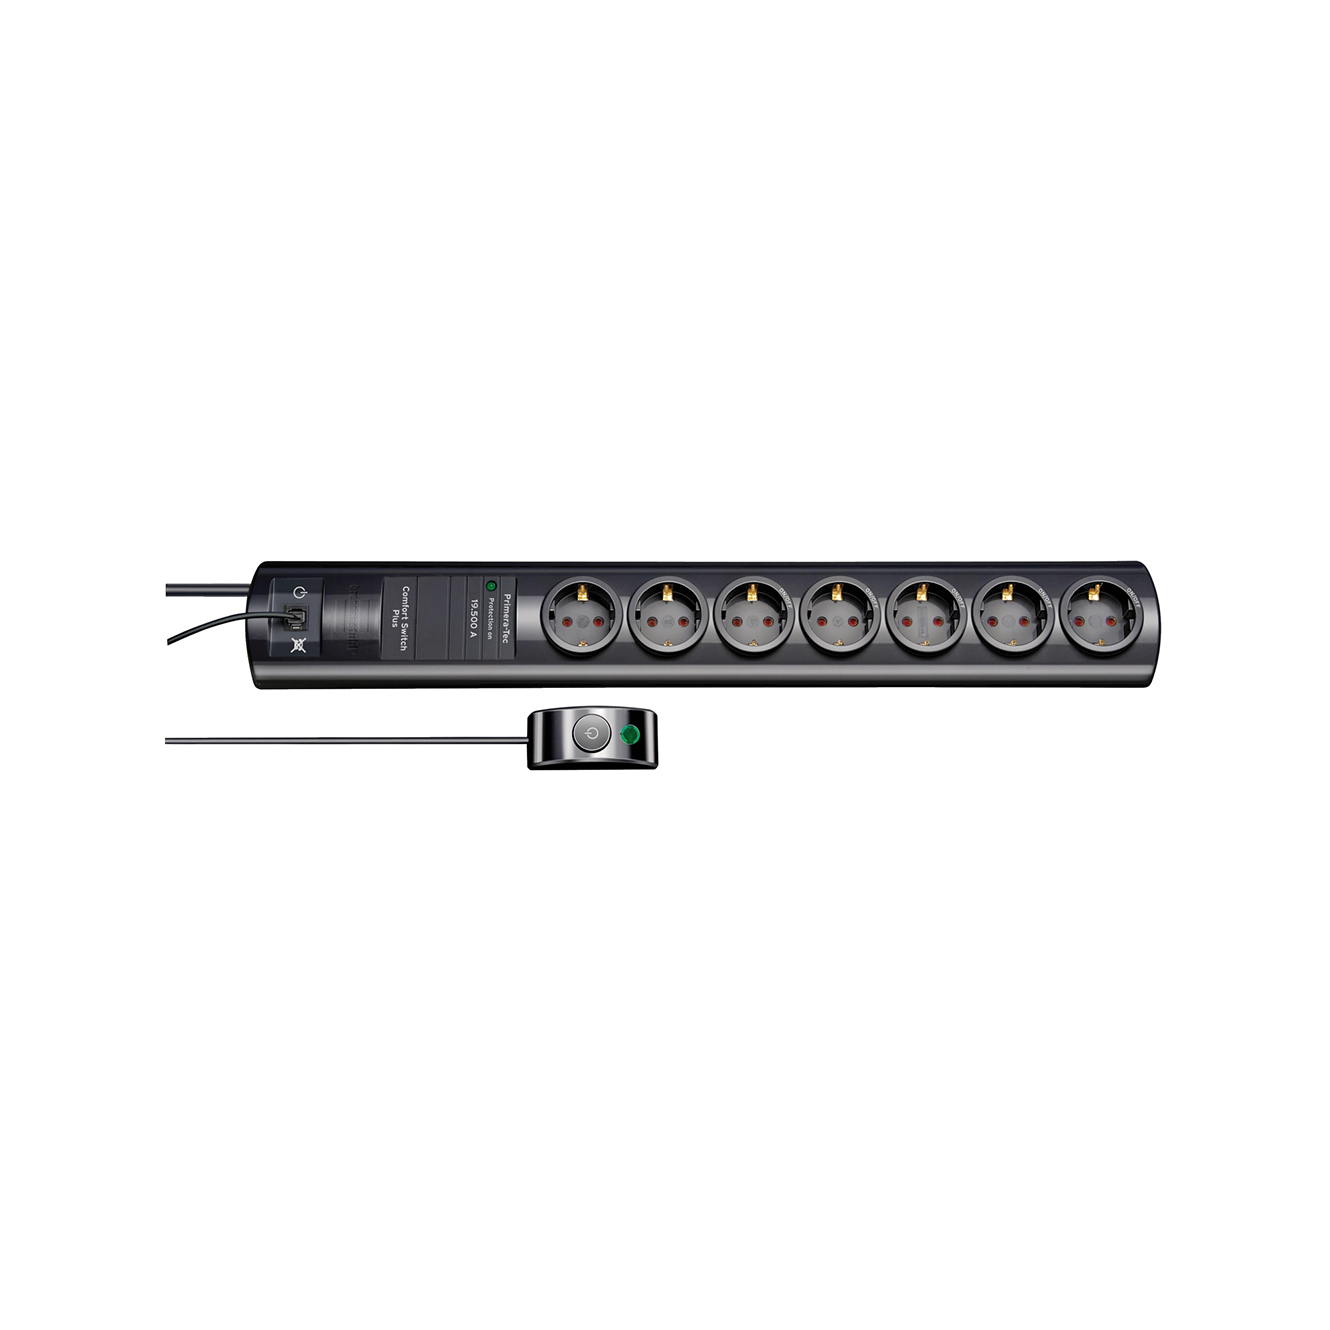 Сетевой фильтр Brennenstuhl Primera-Tec Comfort Switch Plus 19,5 А 7 розеток кабель 2 м H05VV-F 3G1,5 черный  1153300467